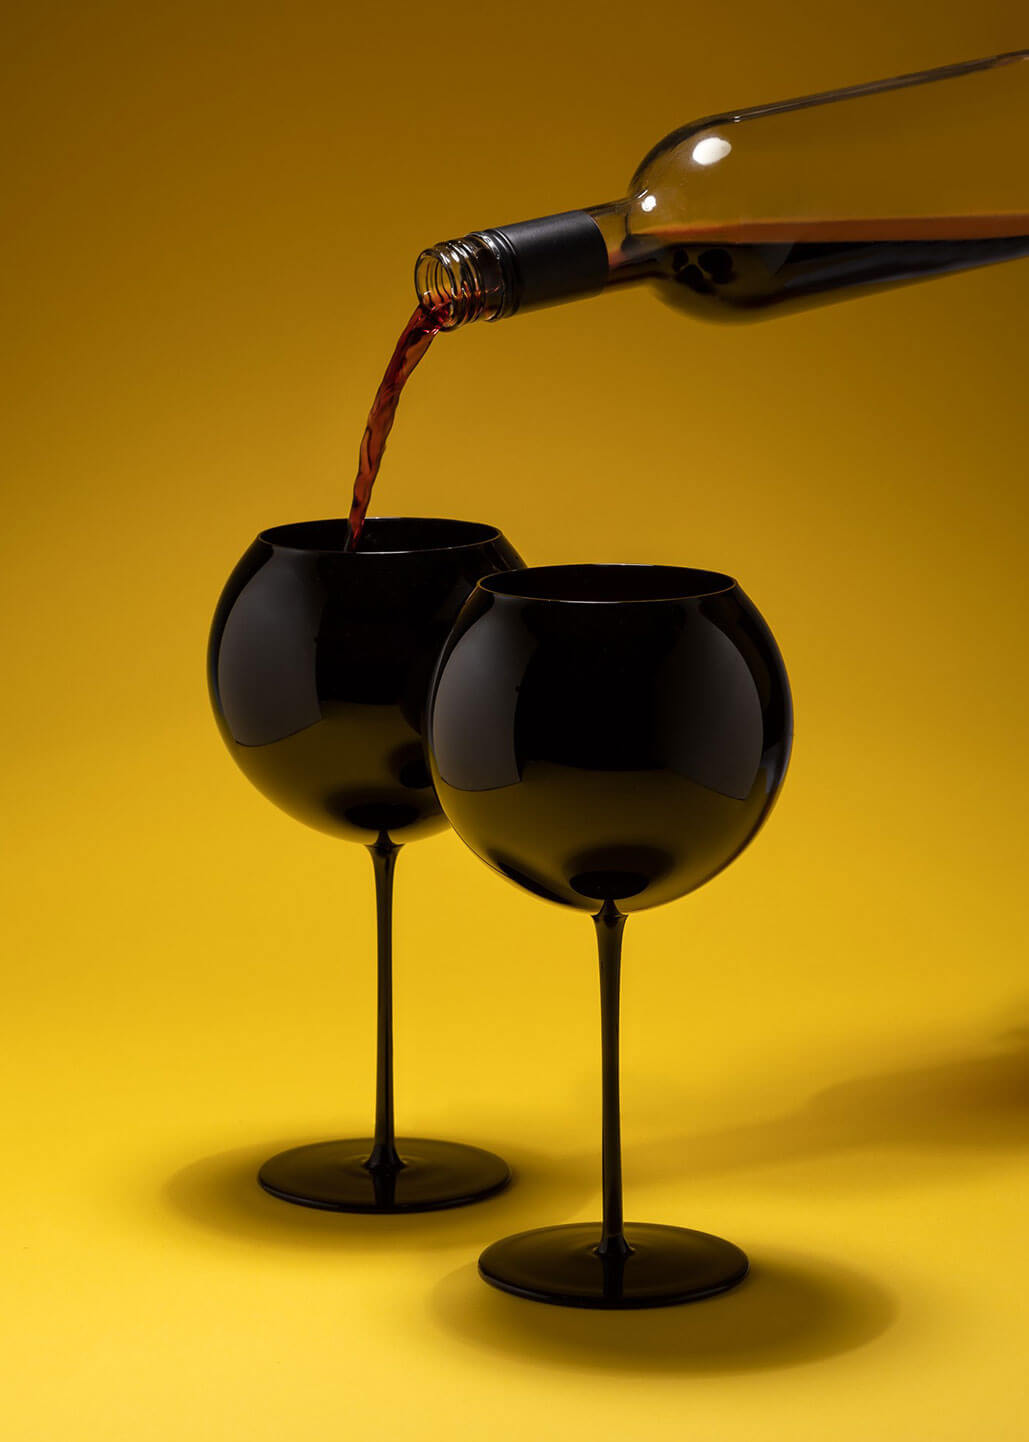 Black Bubbles wine glasses